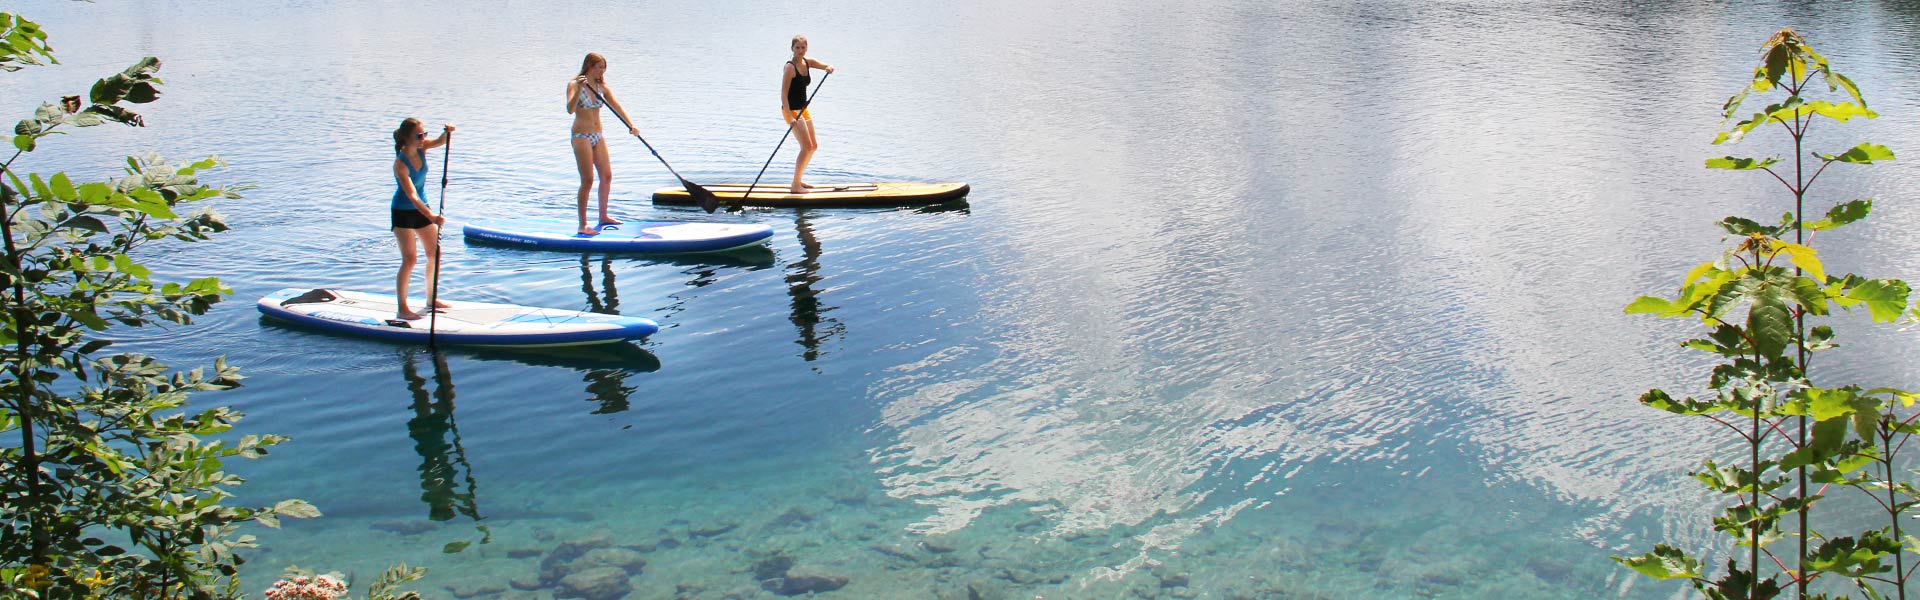 SUP Allgäu auf den Allgäuer Seen geht es zum Stand up paddling mit Leichtigkeit auf so einer Art Surfbrett stehen und paddeln wie damals die alten Indianer